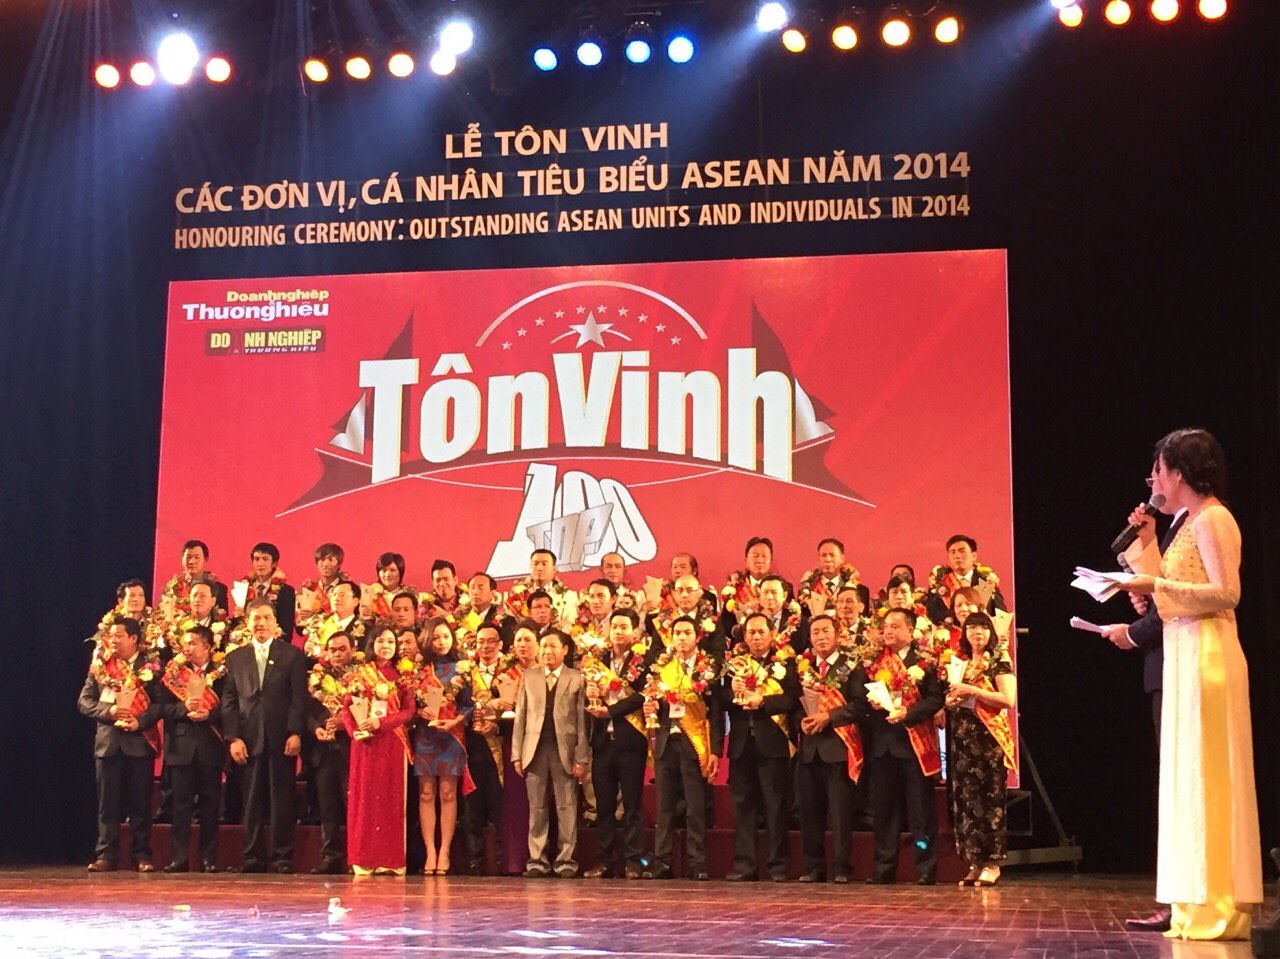 Tập đoàn Sunhouse vinh dự nhận giải thưởng “Top 100 thương hiệu – nhãn hiệu hàng đầu Asean 2014”